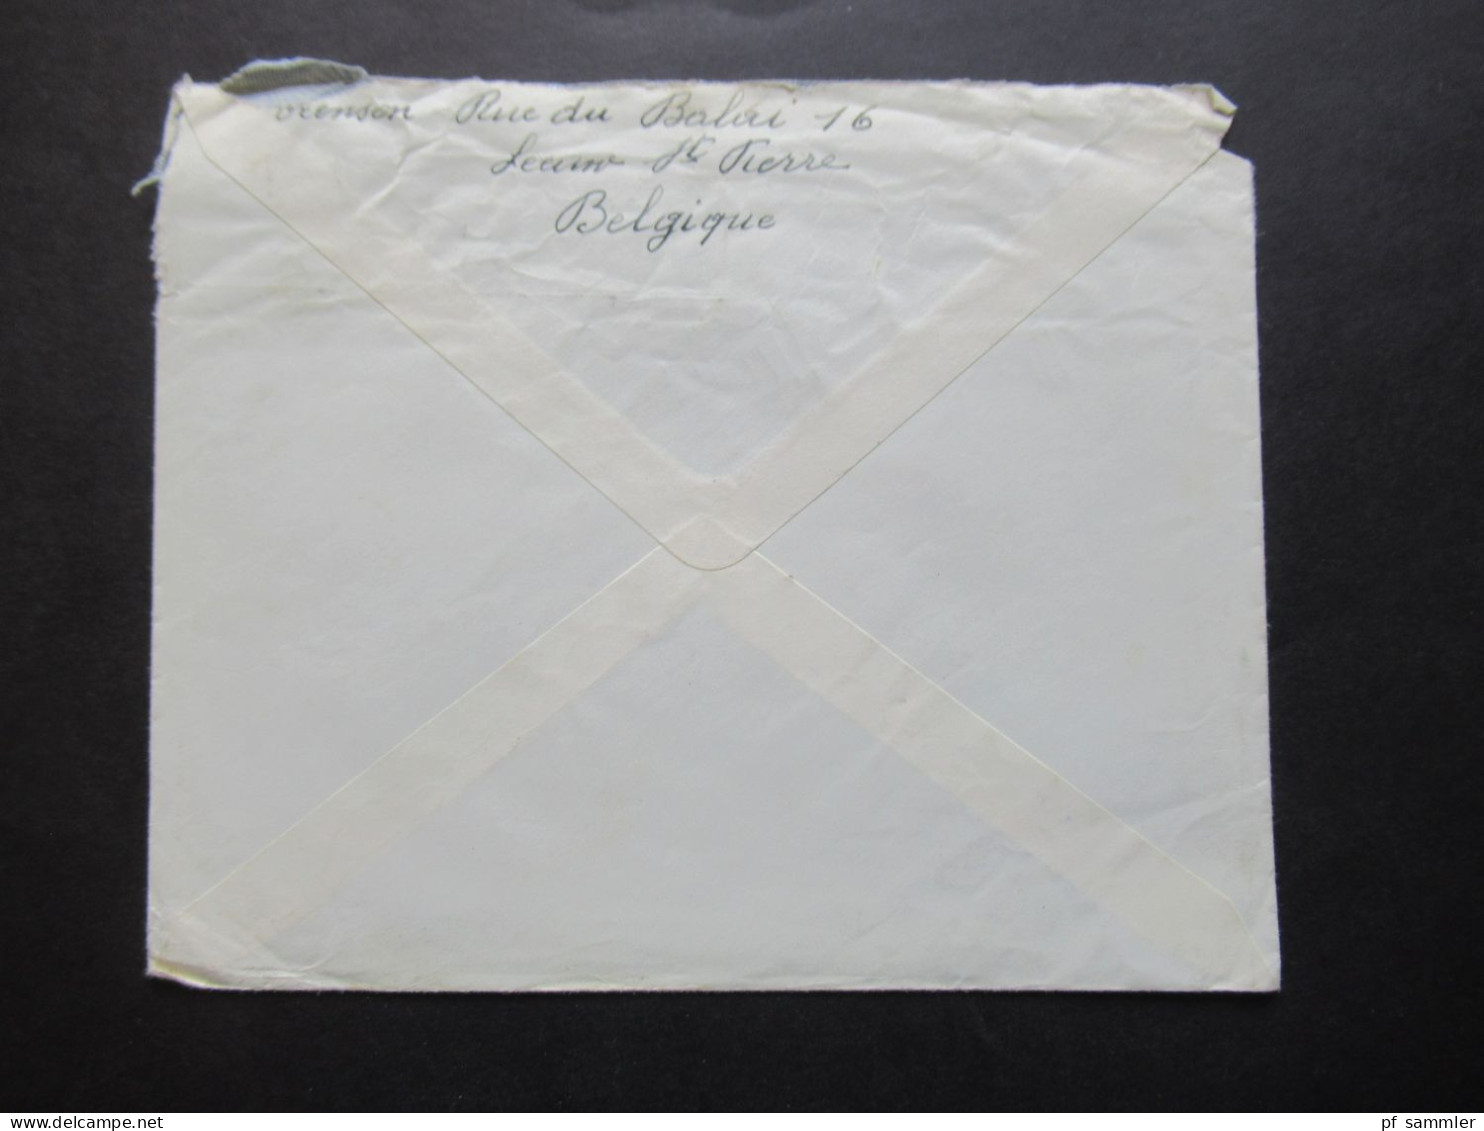 Belgien 1951 Auslandsbrief Nach Wien Zensurbeleg / Stempel Österrereichische Zensurstelle Und Roter Stempel 23 A - Briefe U. Dokumente